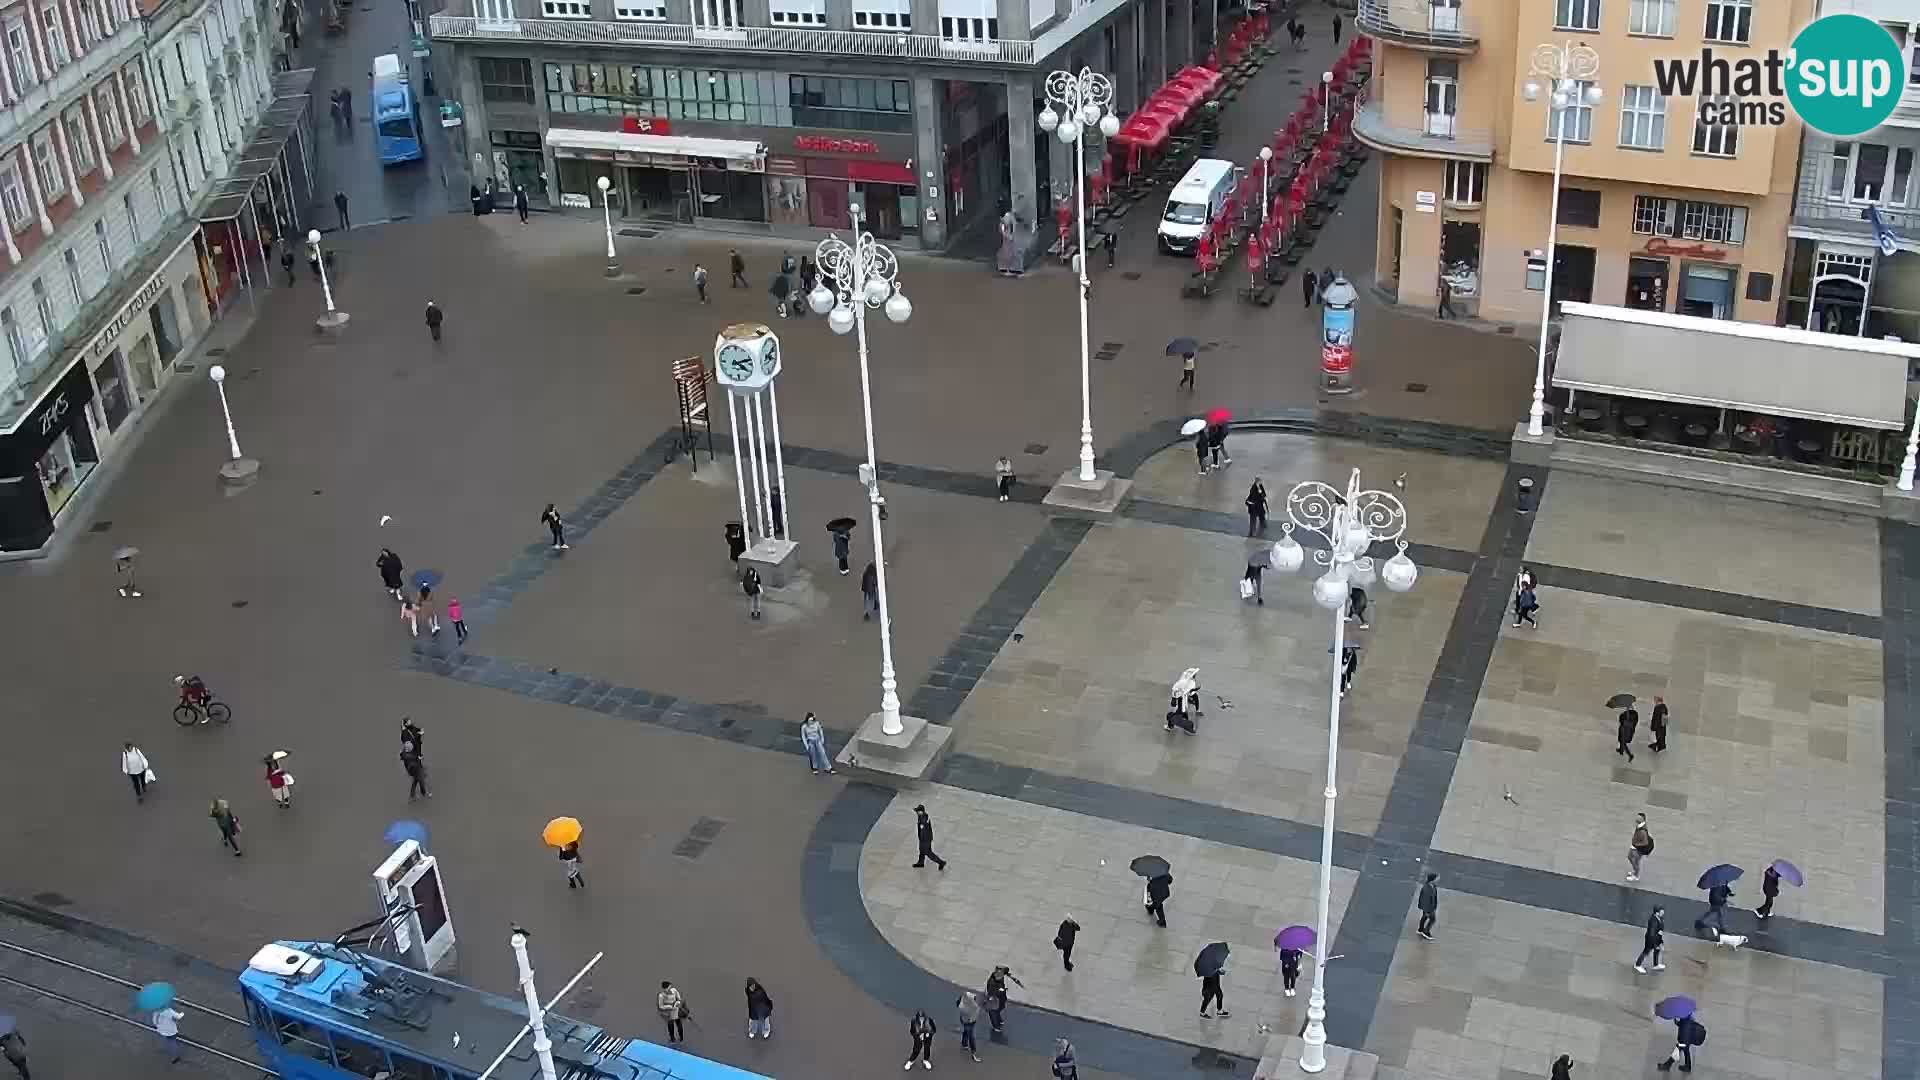 LIVE Webcam Zagreb – Ban Jelačić – Hotel Dubrovnik